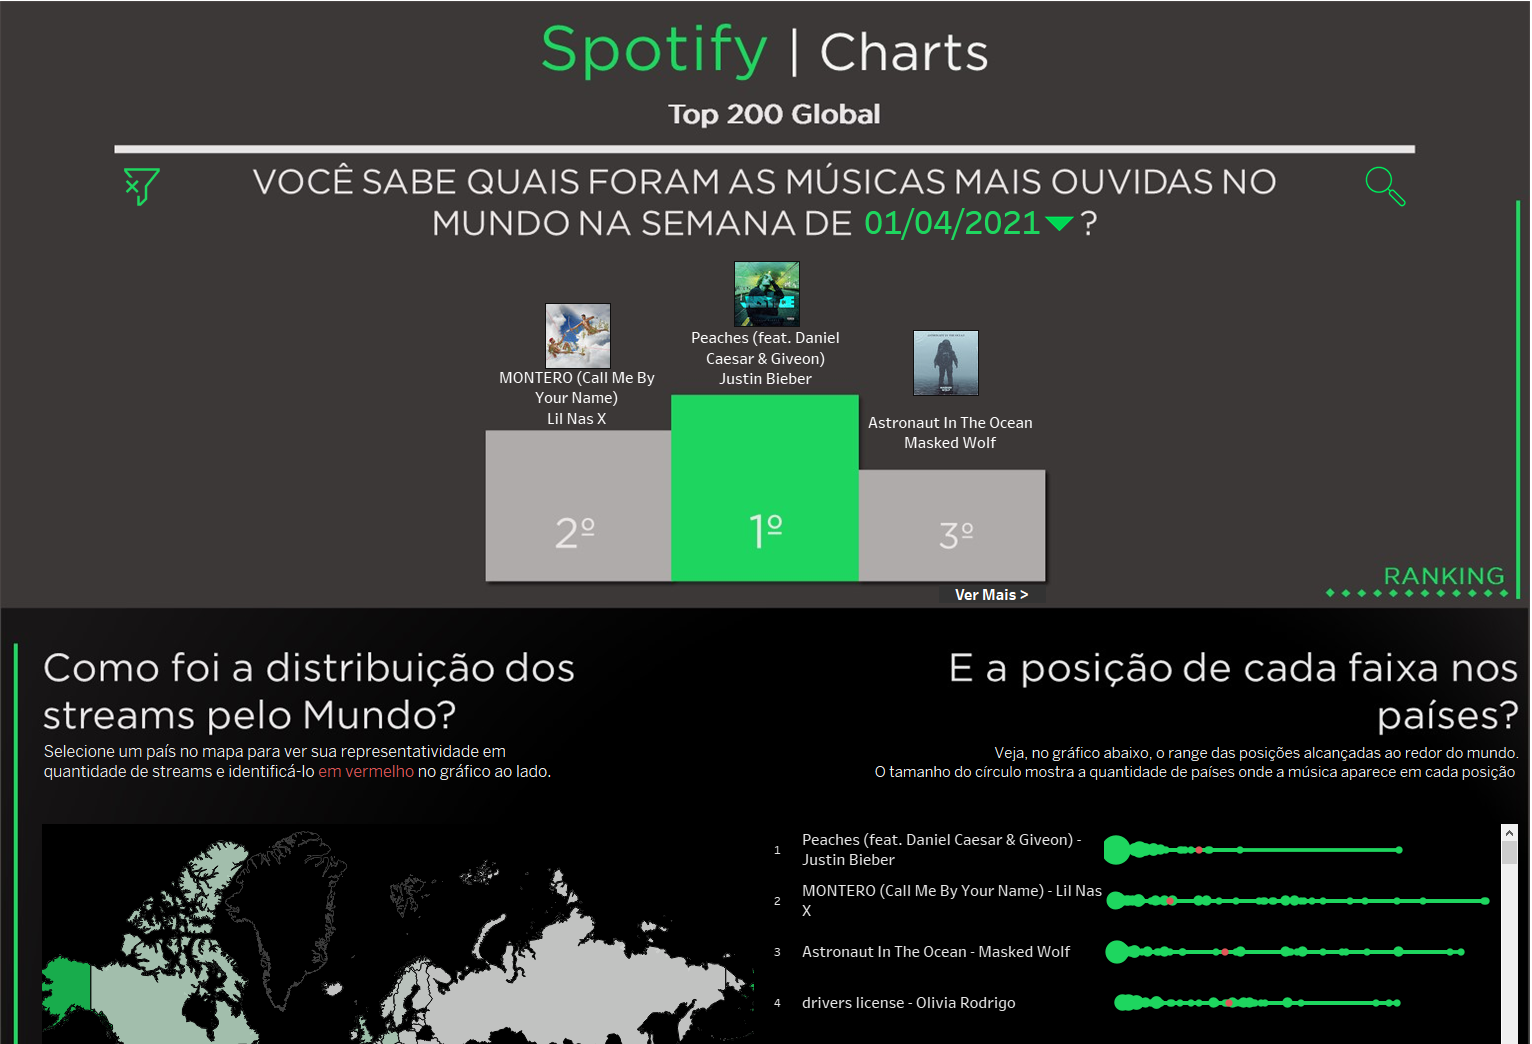 Spotify Charts